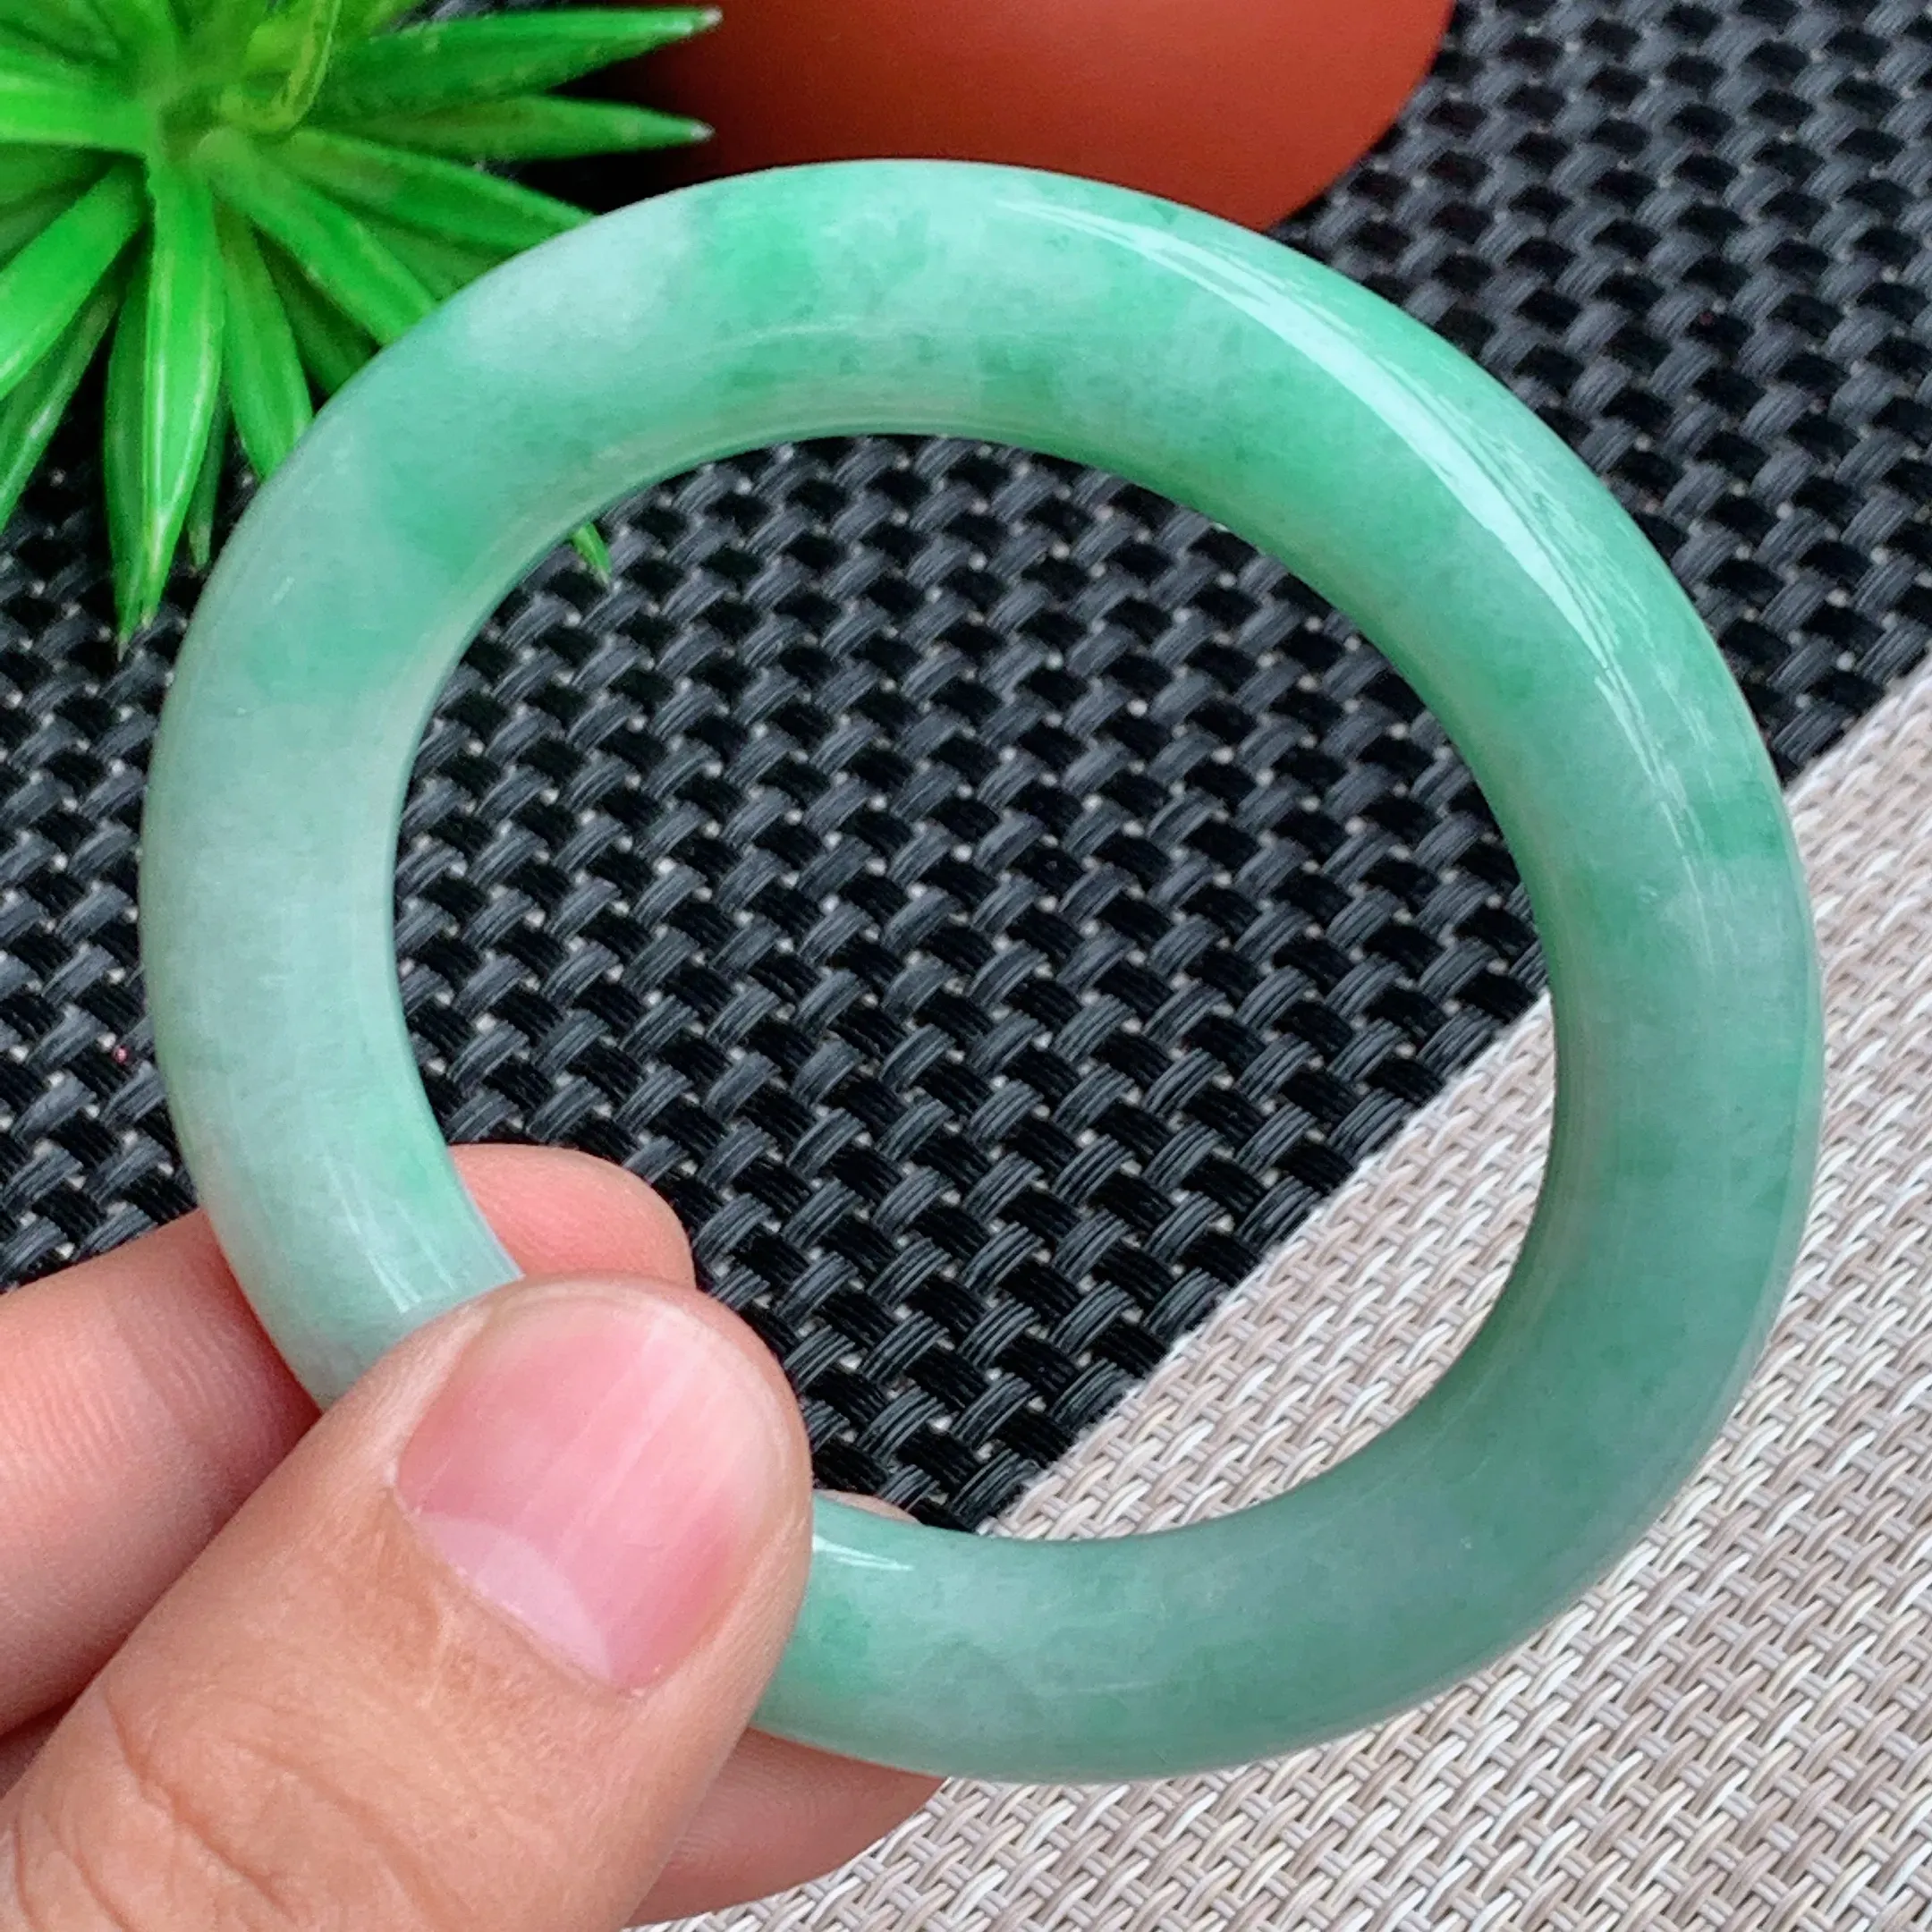 圈口：52mm，A货翡翠细腻带绿圆条手镯、玉质莹润细腻，条形圆润饱满，